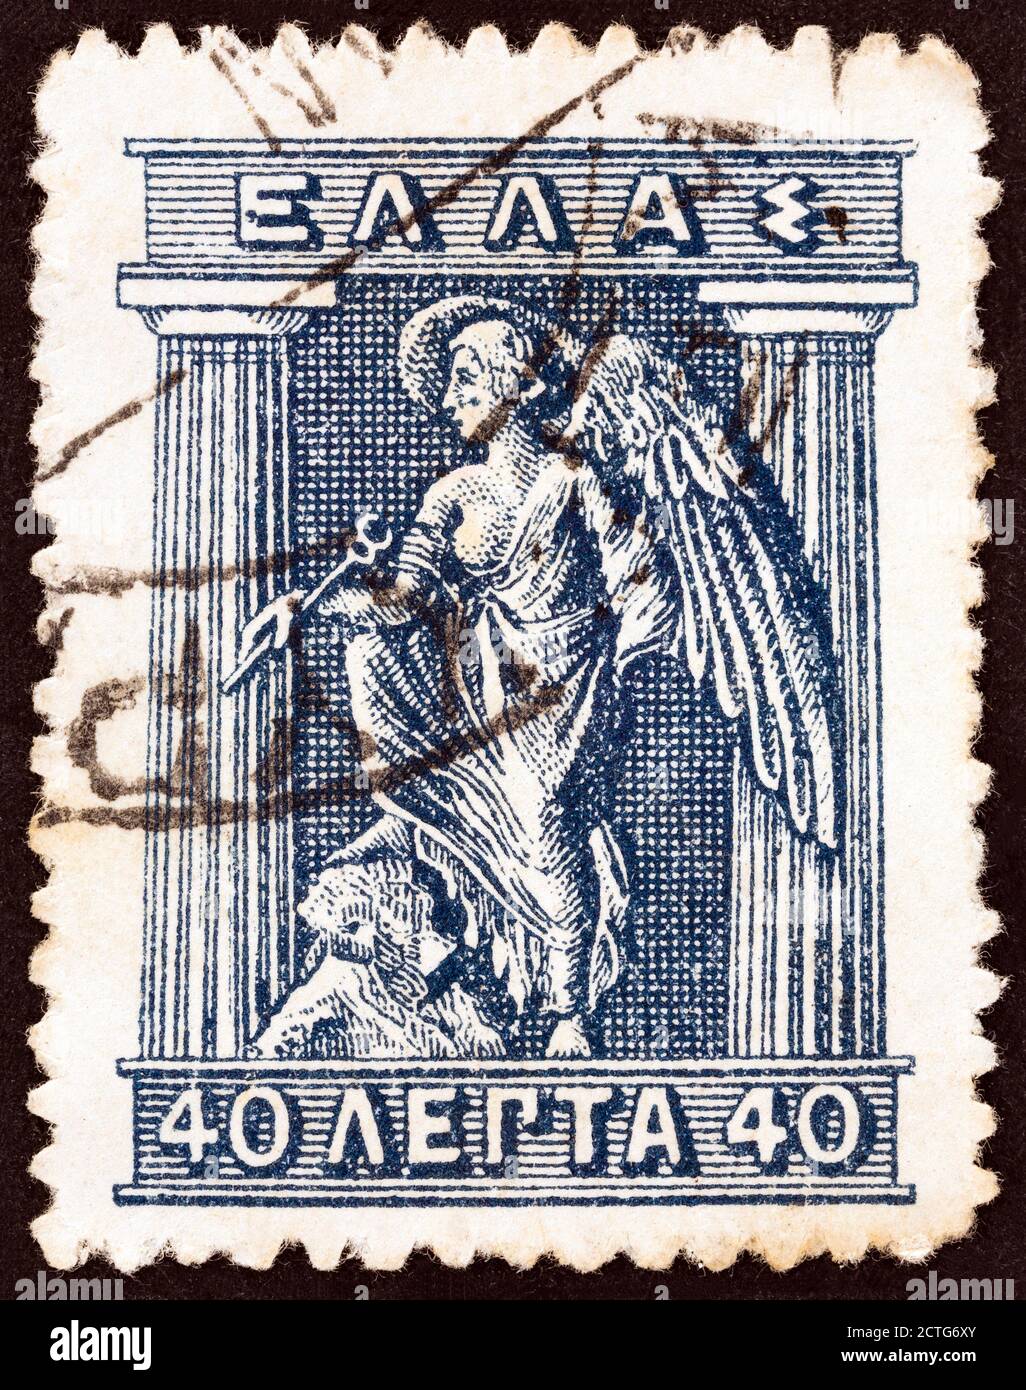 GRECIA - CIRCA 1911: Un francobollo stampato in Grecia mostra Iris la personificazione dell'arcobaleno e messaggero degli dei, circa 1911. Foto Stock